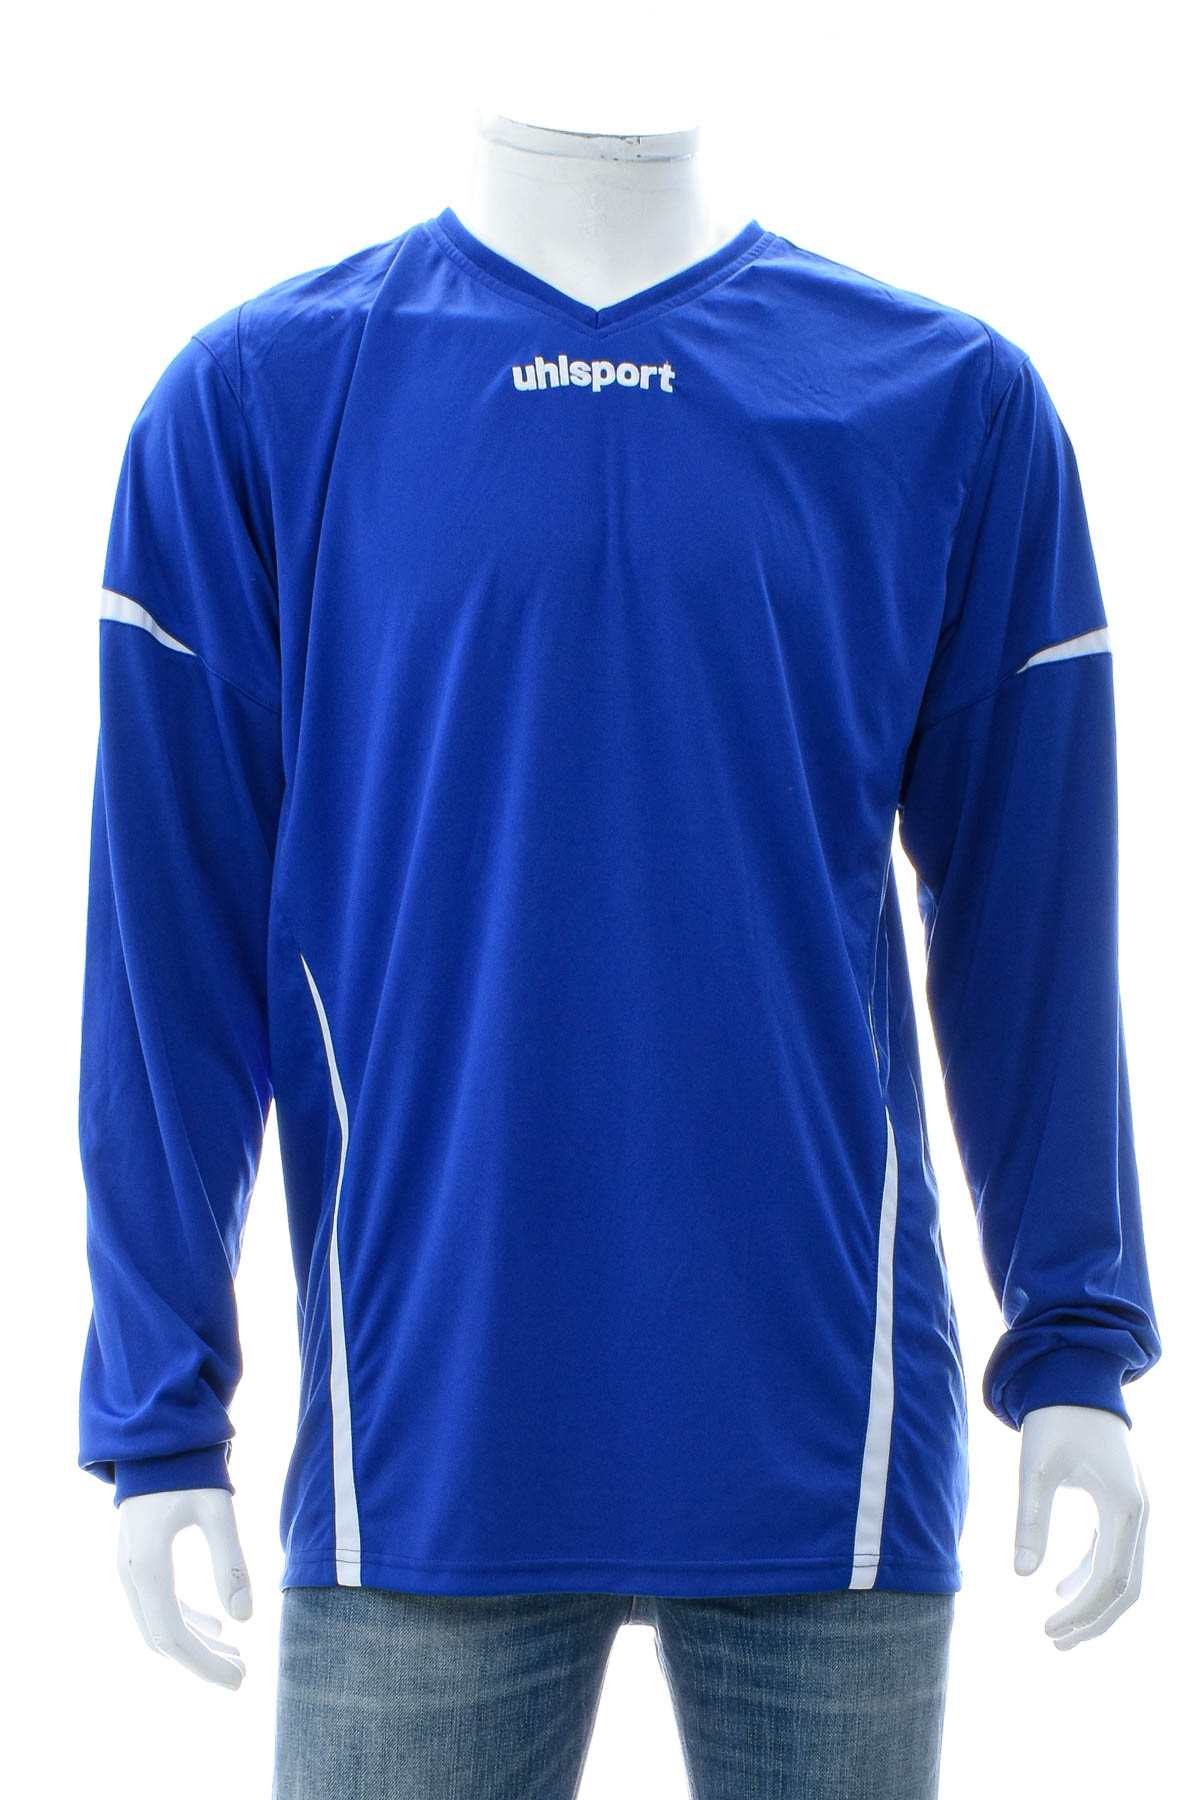 Ανδρική μπλούζα - Uhlsport - 0